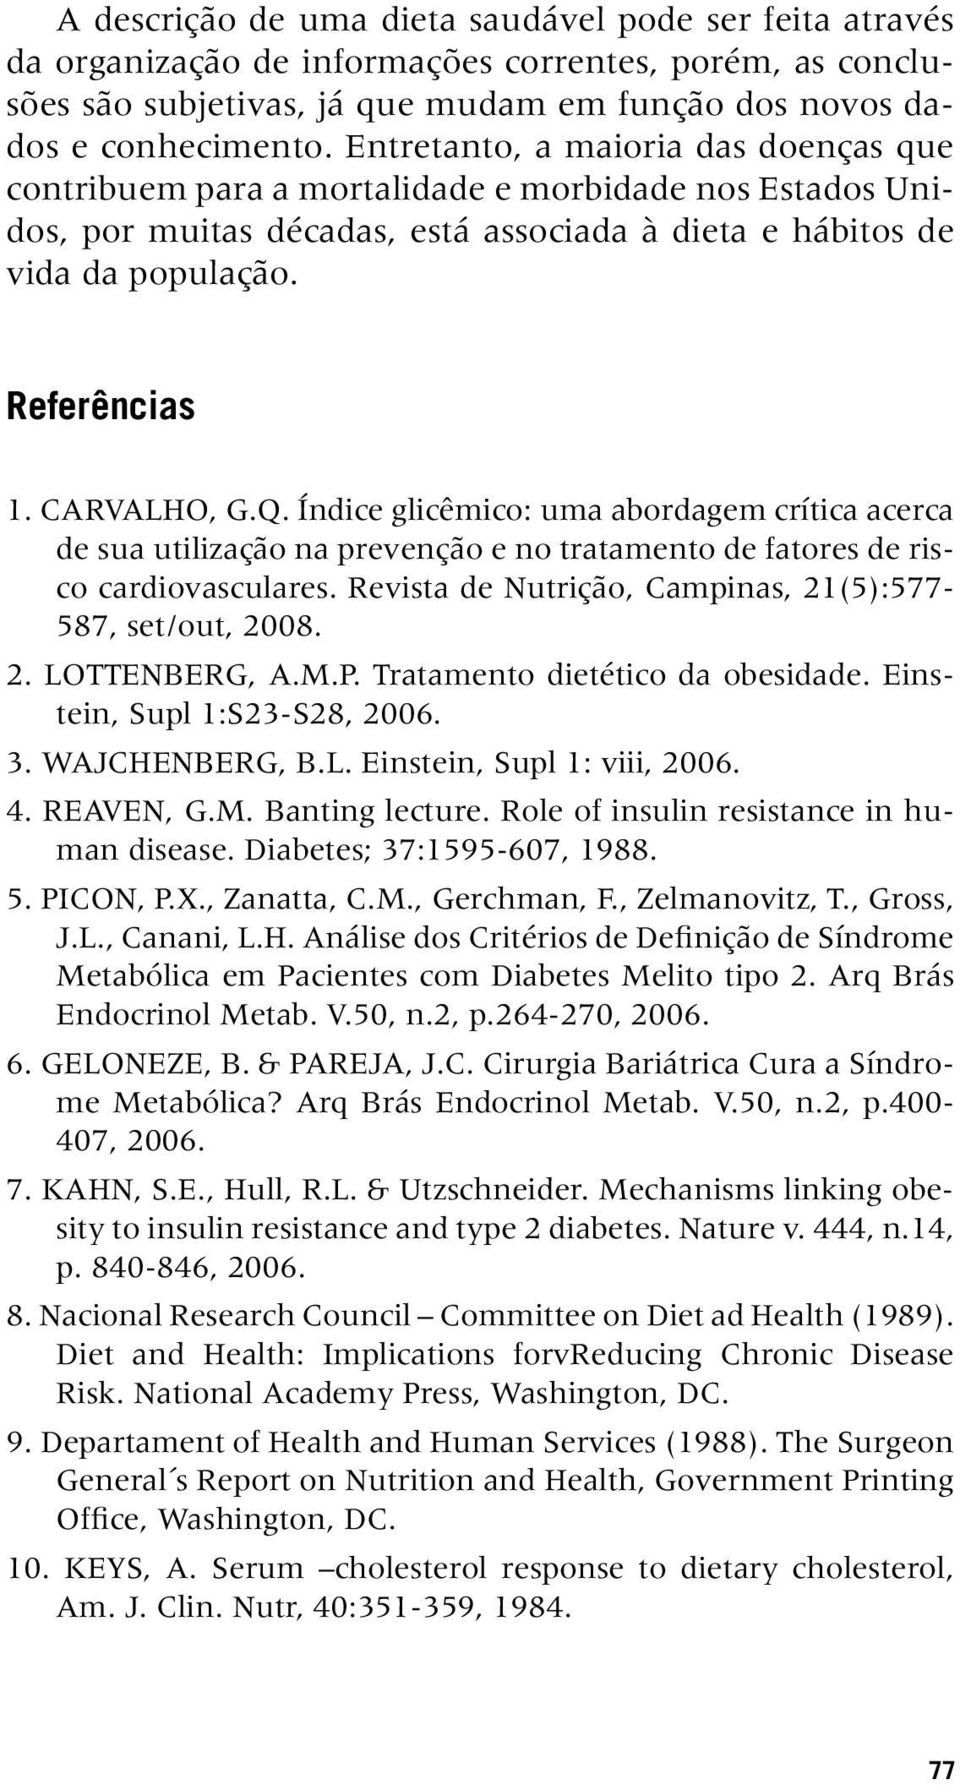 CARVALHO, G.Q. Índice glicêmico: uma abordagem crítica acerca de sua utilização na prevenção e no tratamento de fatores de risco cardiovasculares.